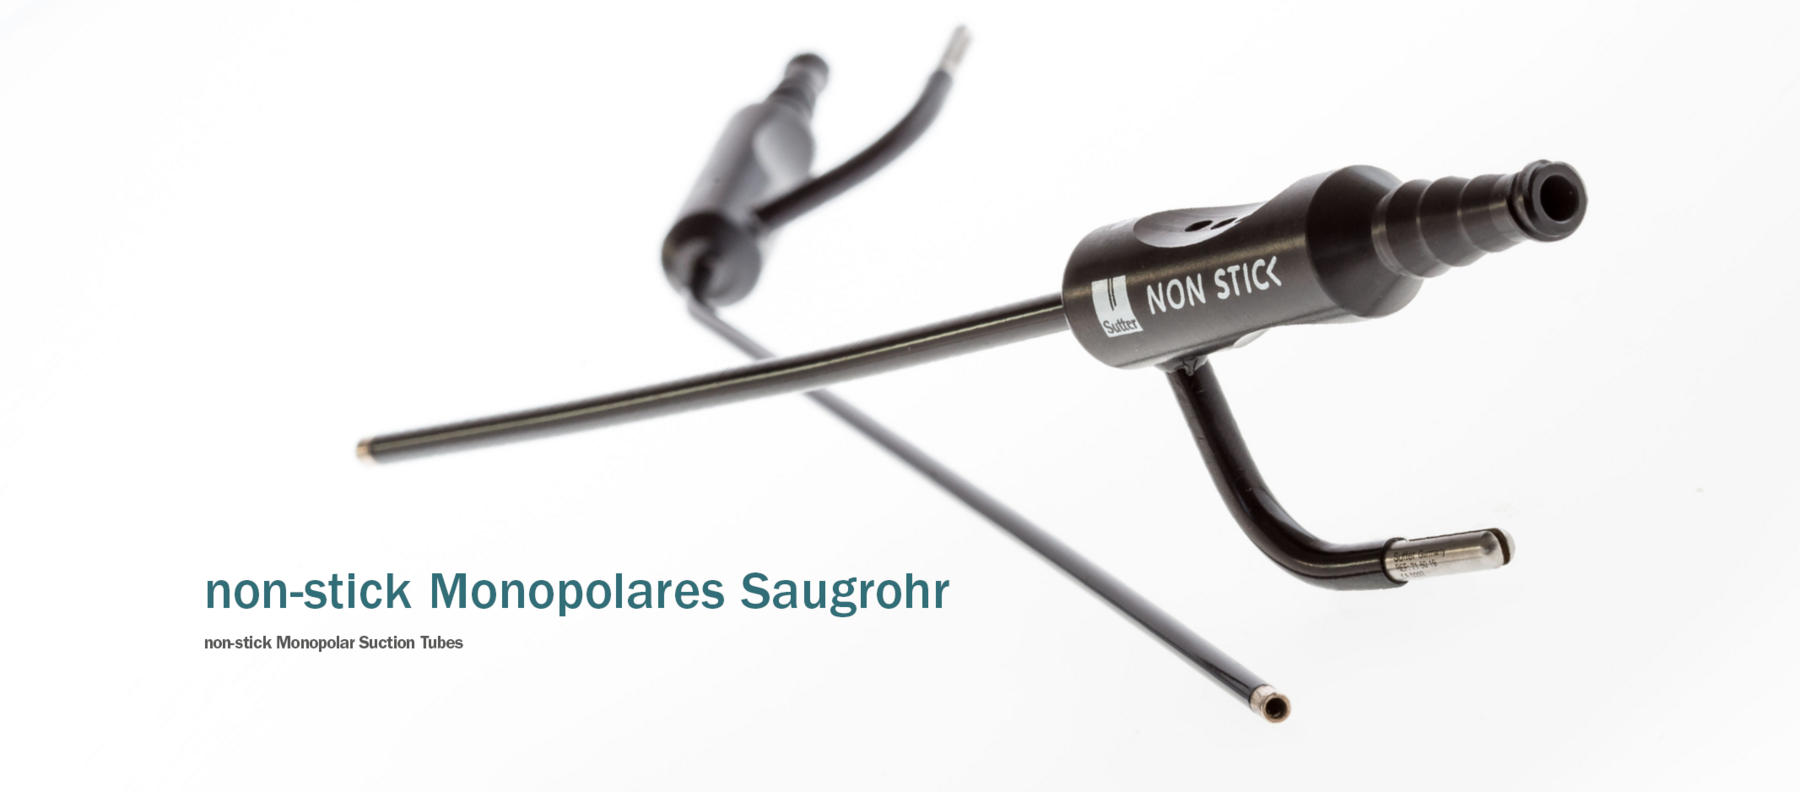 non-stick Monopolares Saugrohr